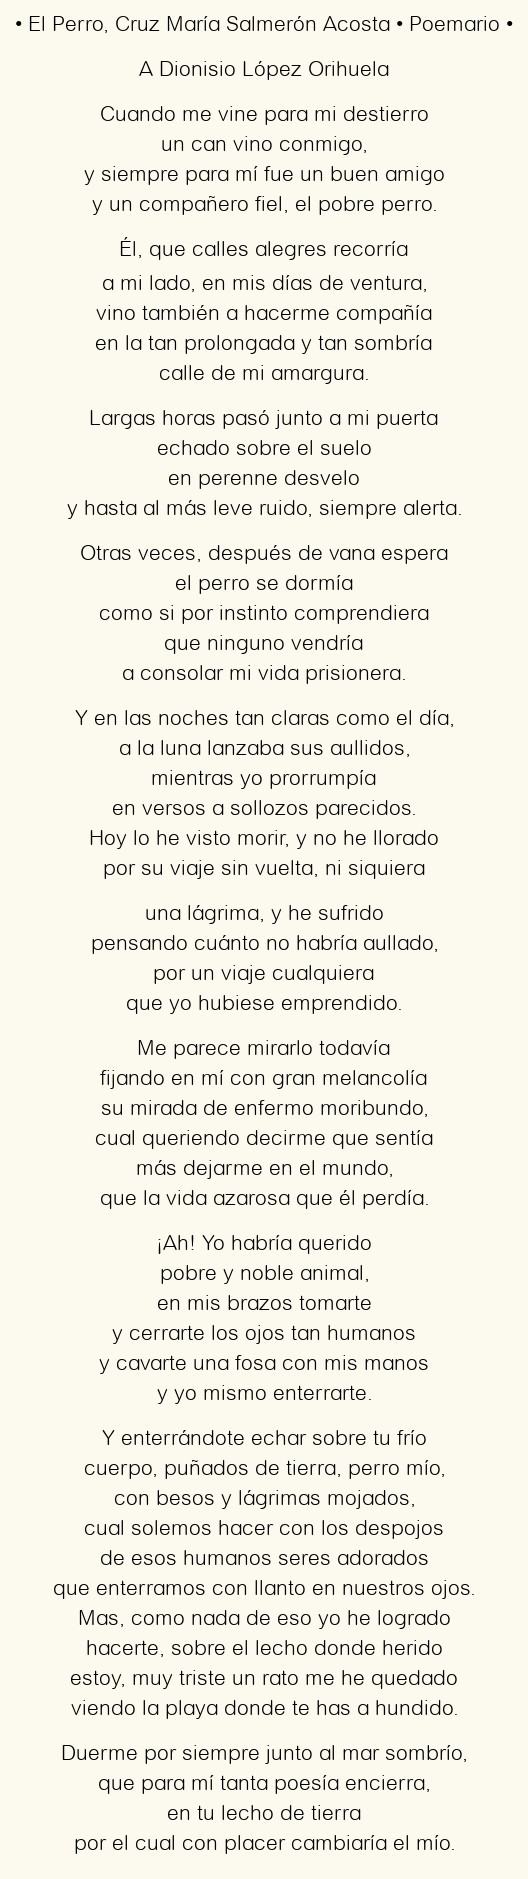 Imagen con el poema El Perro, por Cruz María Salmerón Acosta